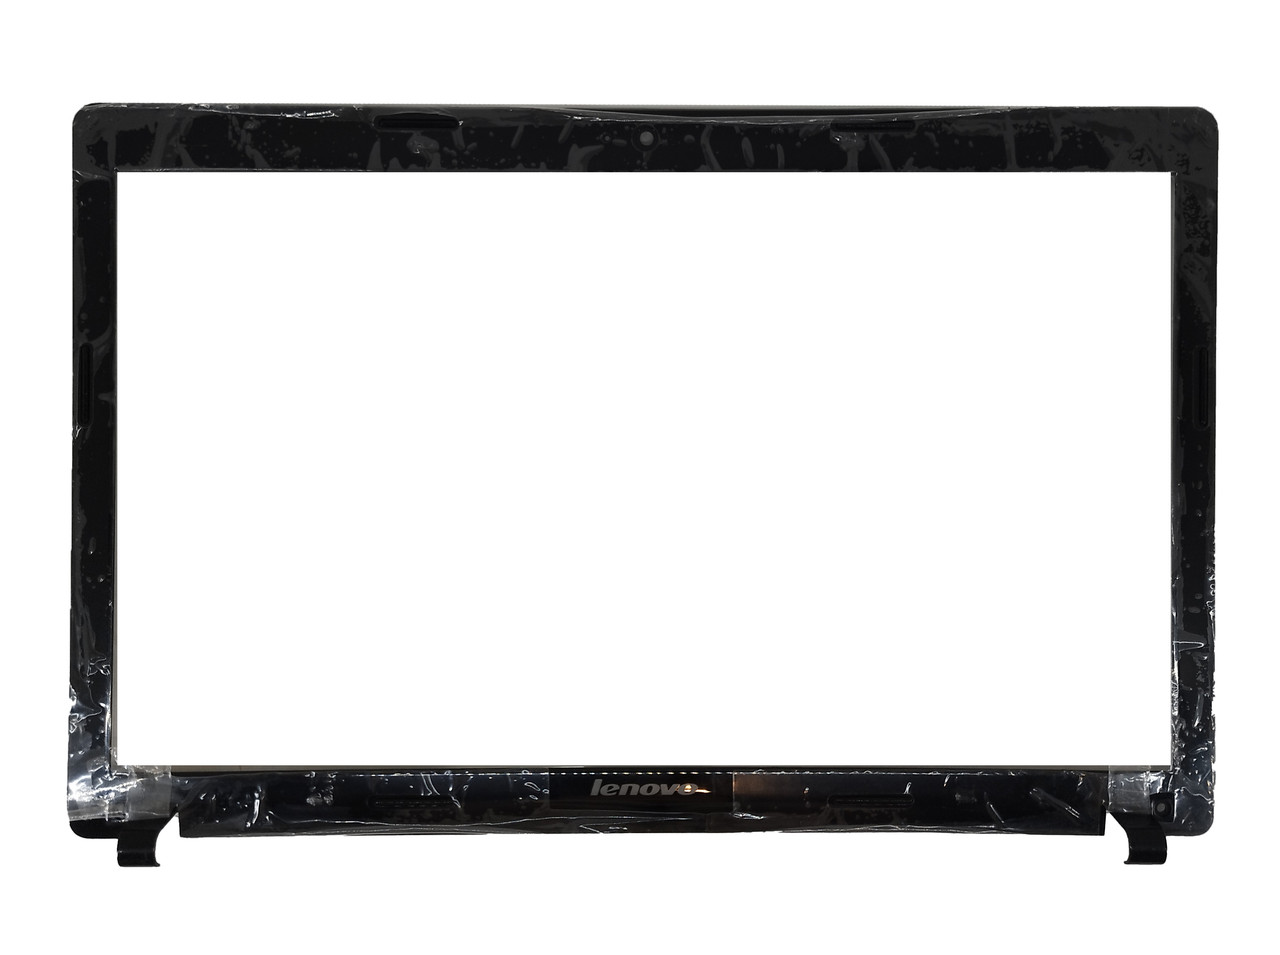 Рамка крышки матрицы Lenovo IdeaPad G580, черная